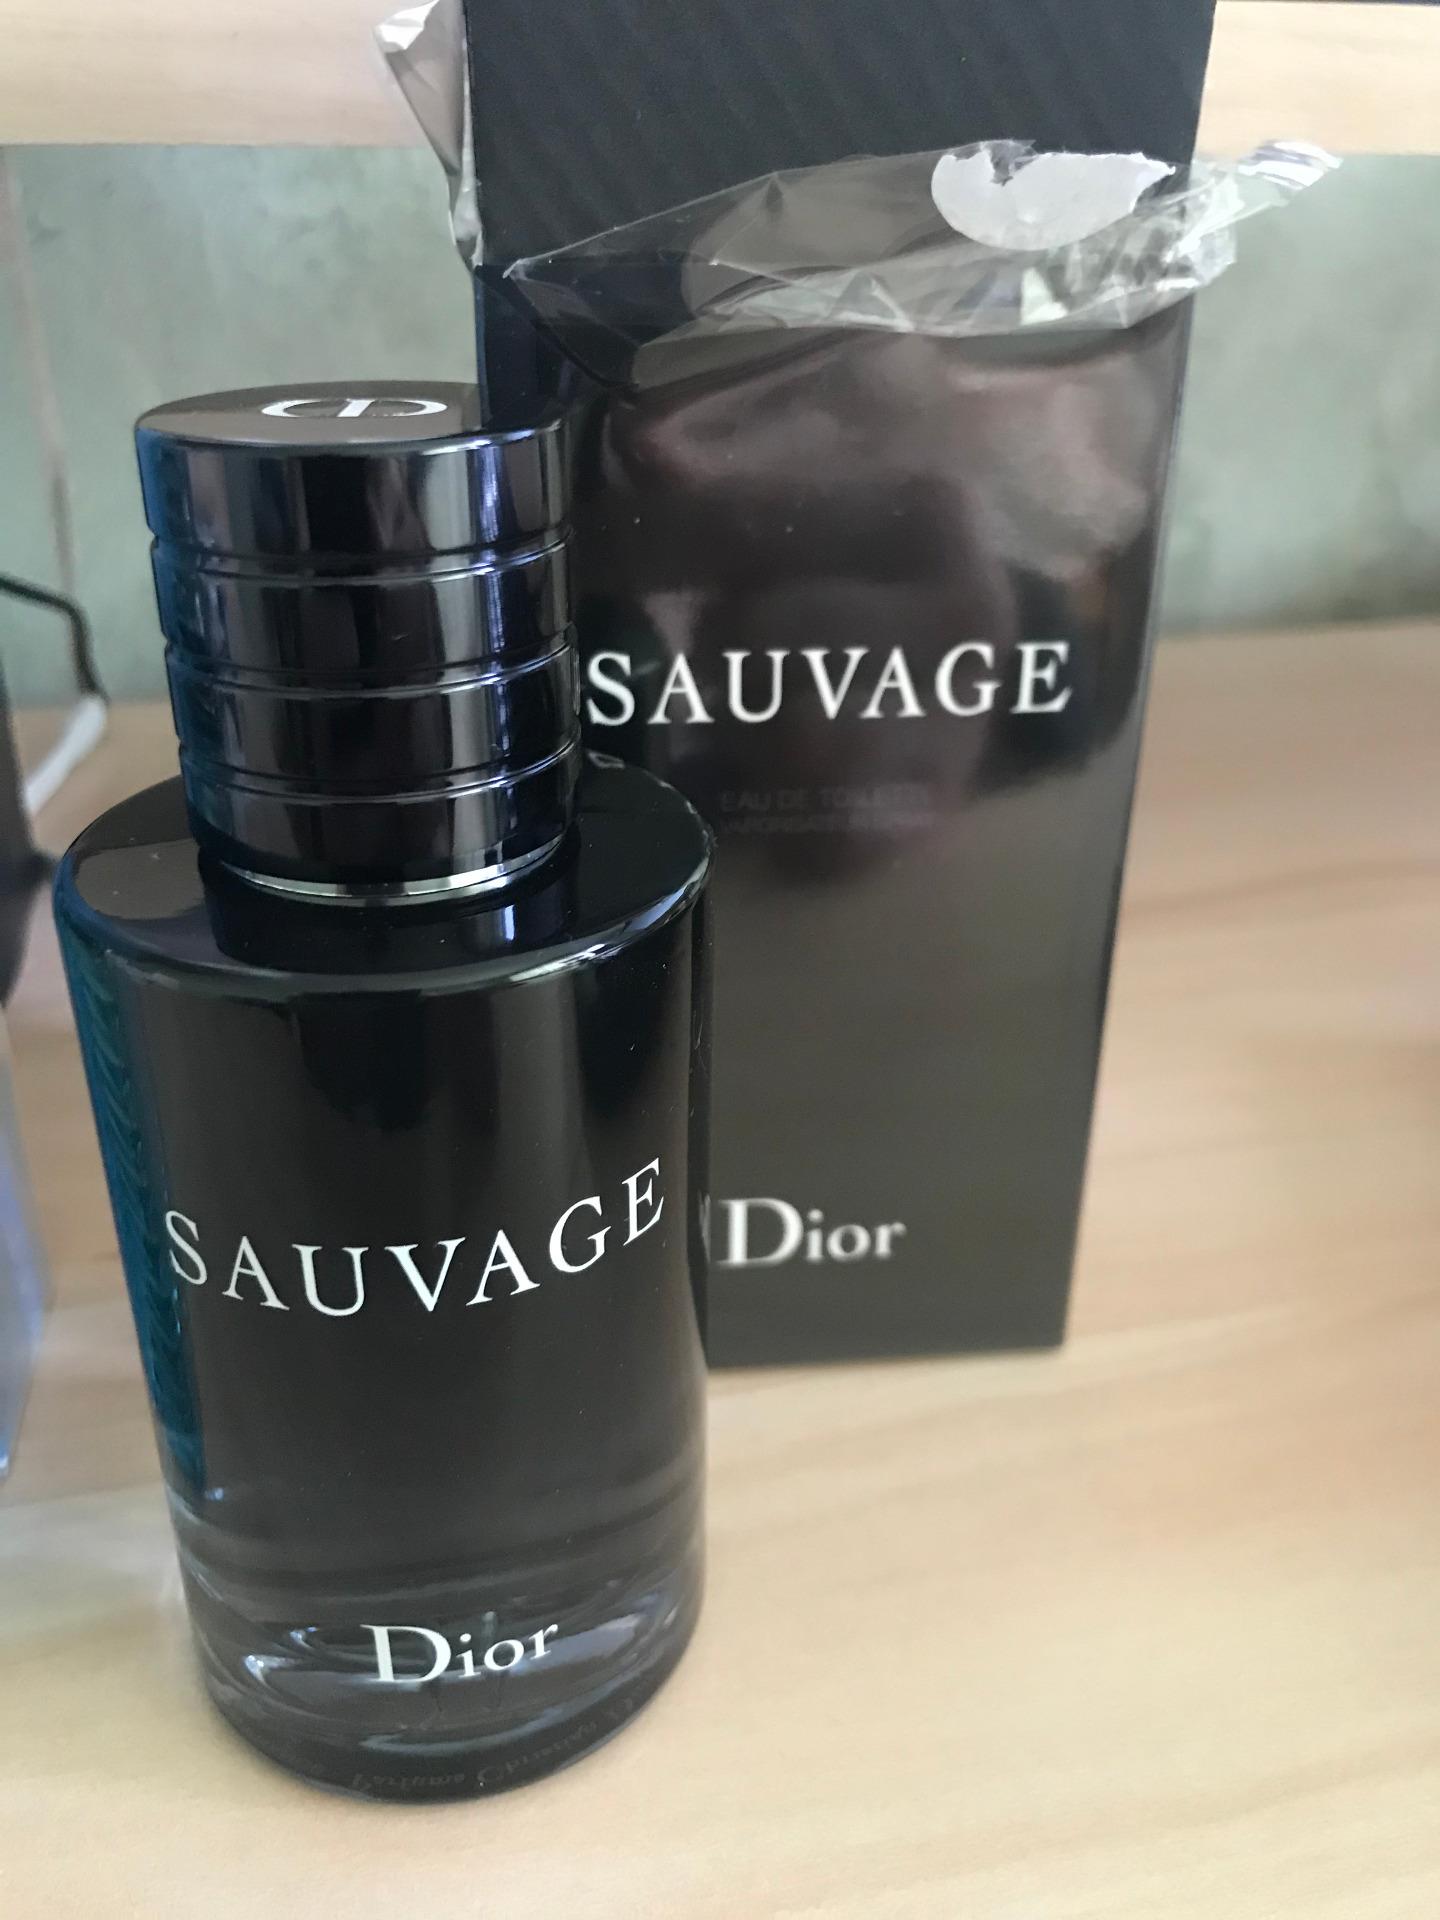 Christian Dior Sauvage Woda Toaletowa 100ml Opinie I Ceny Na Ceneo Pl